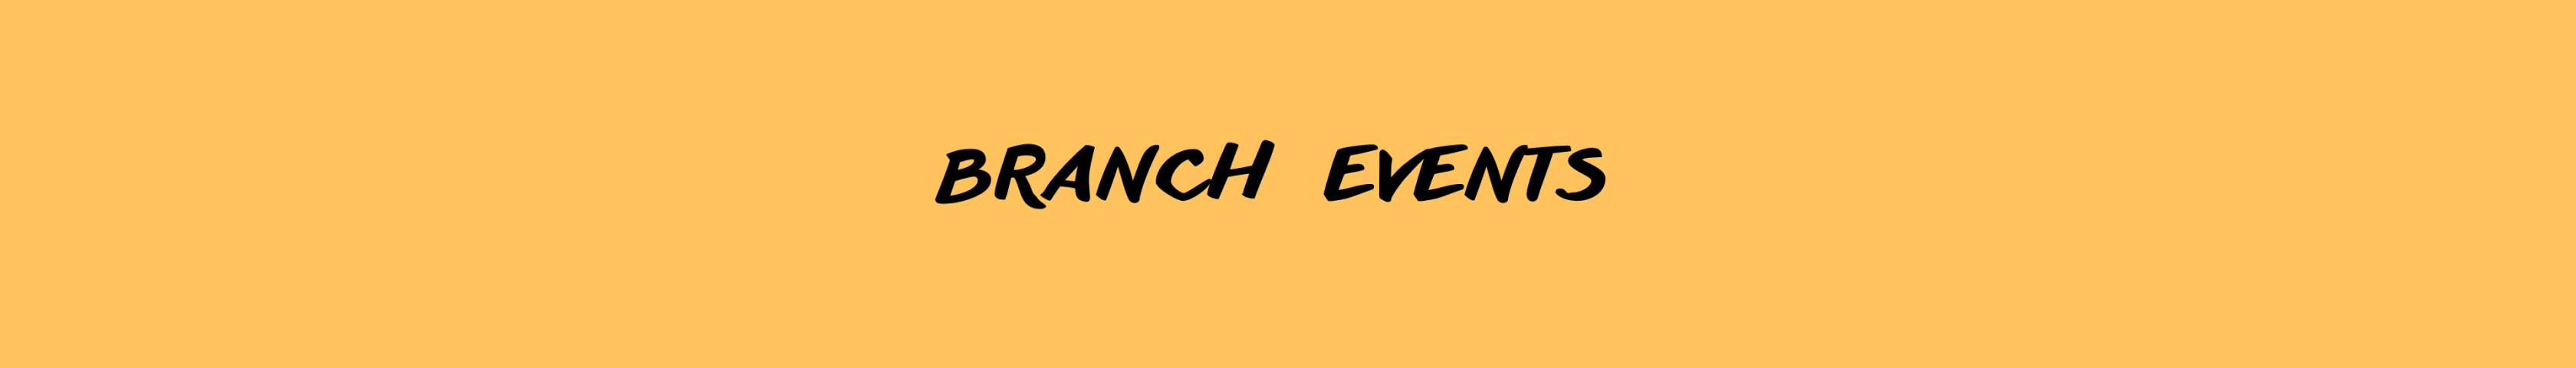 Branch events v.2